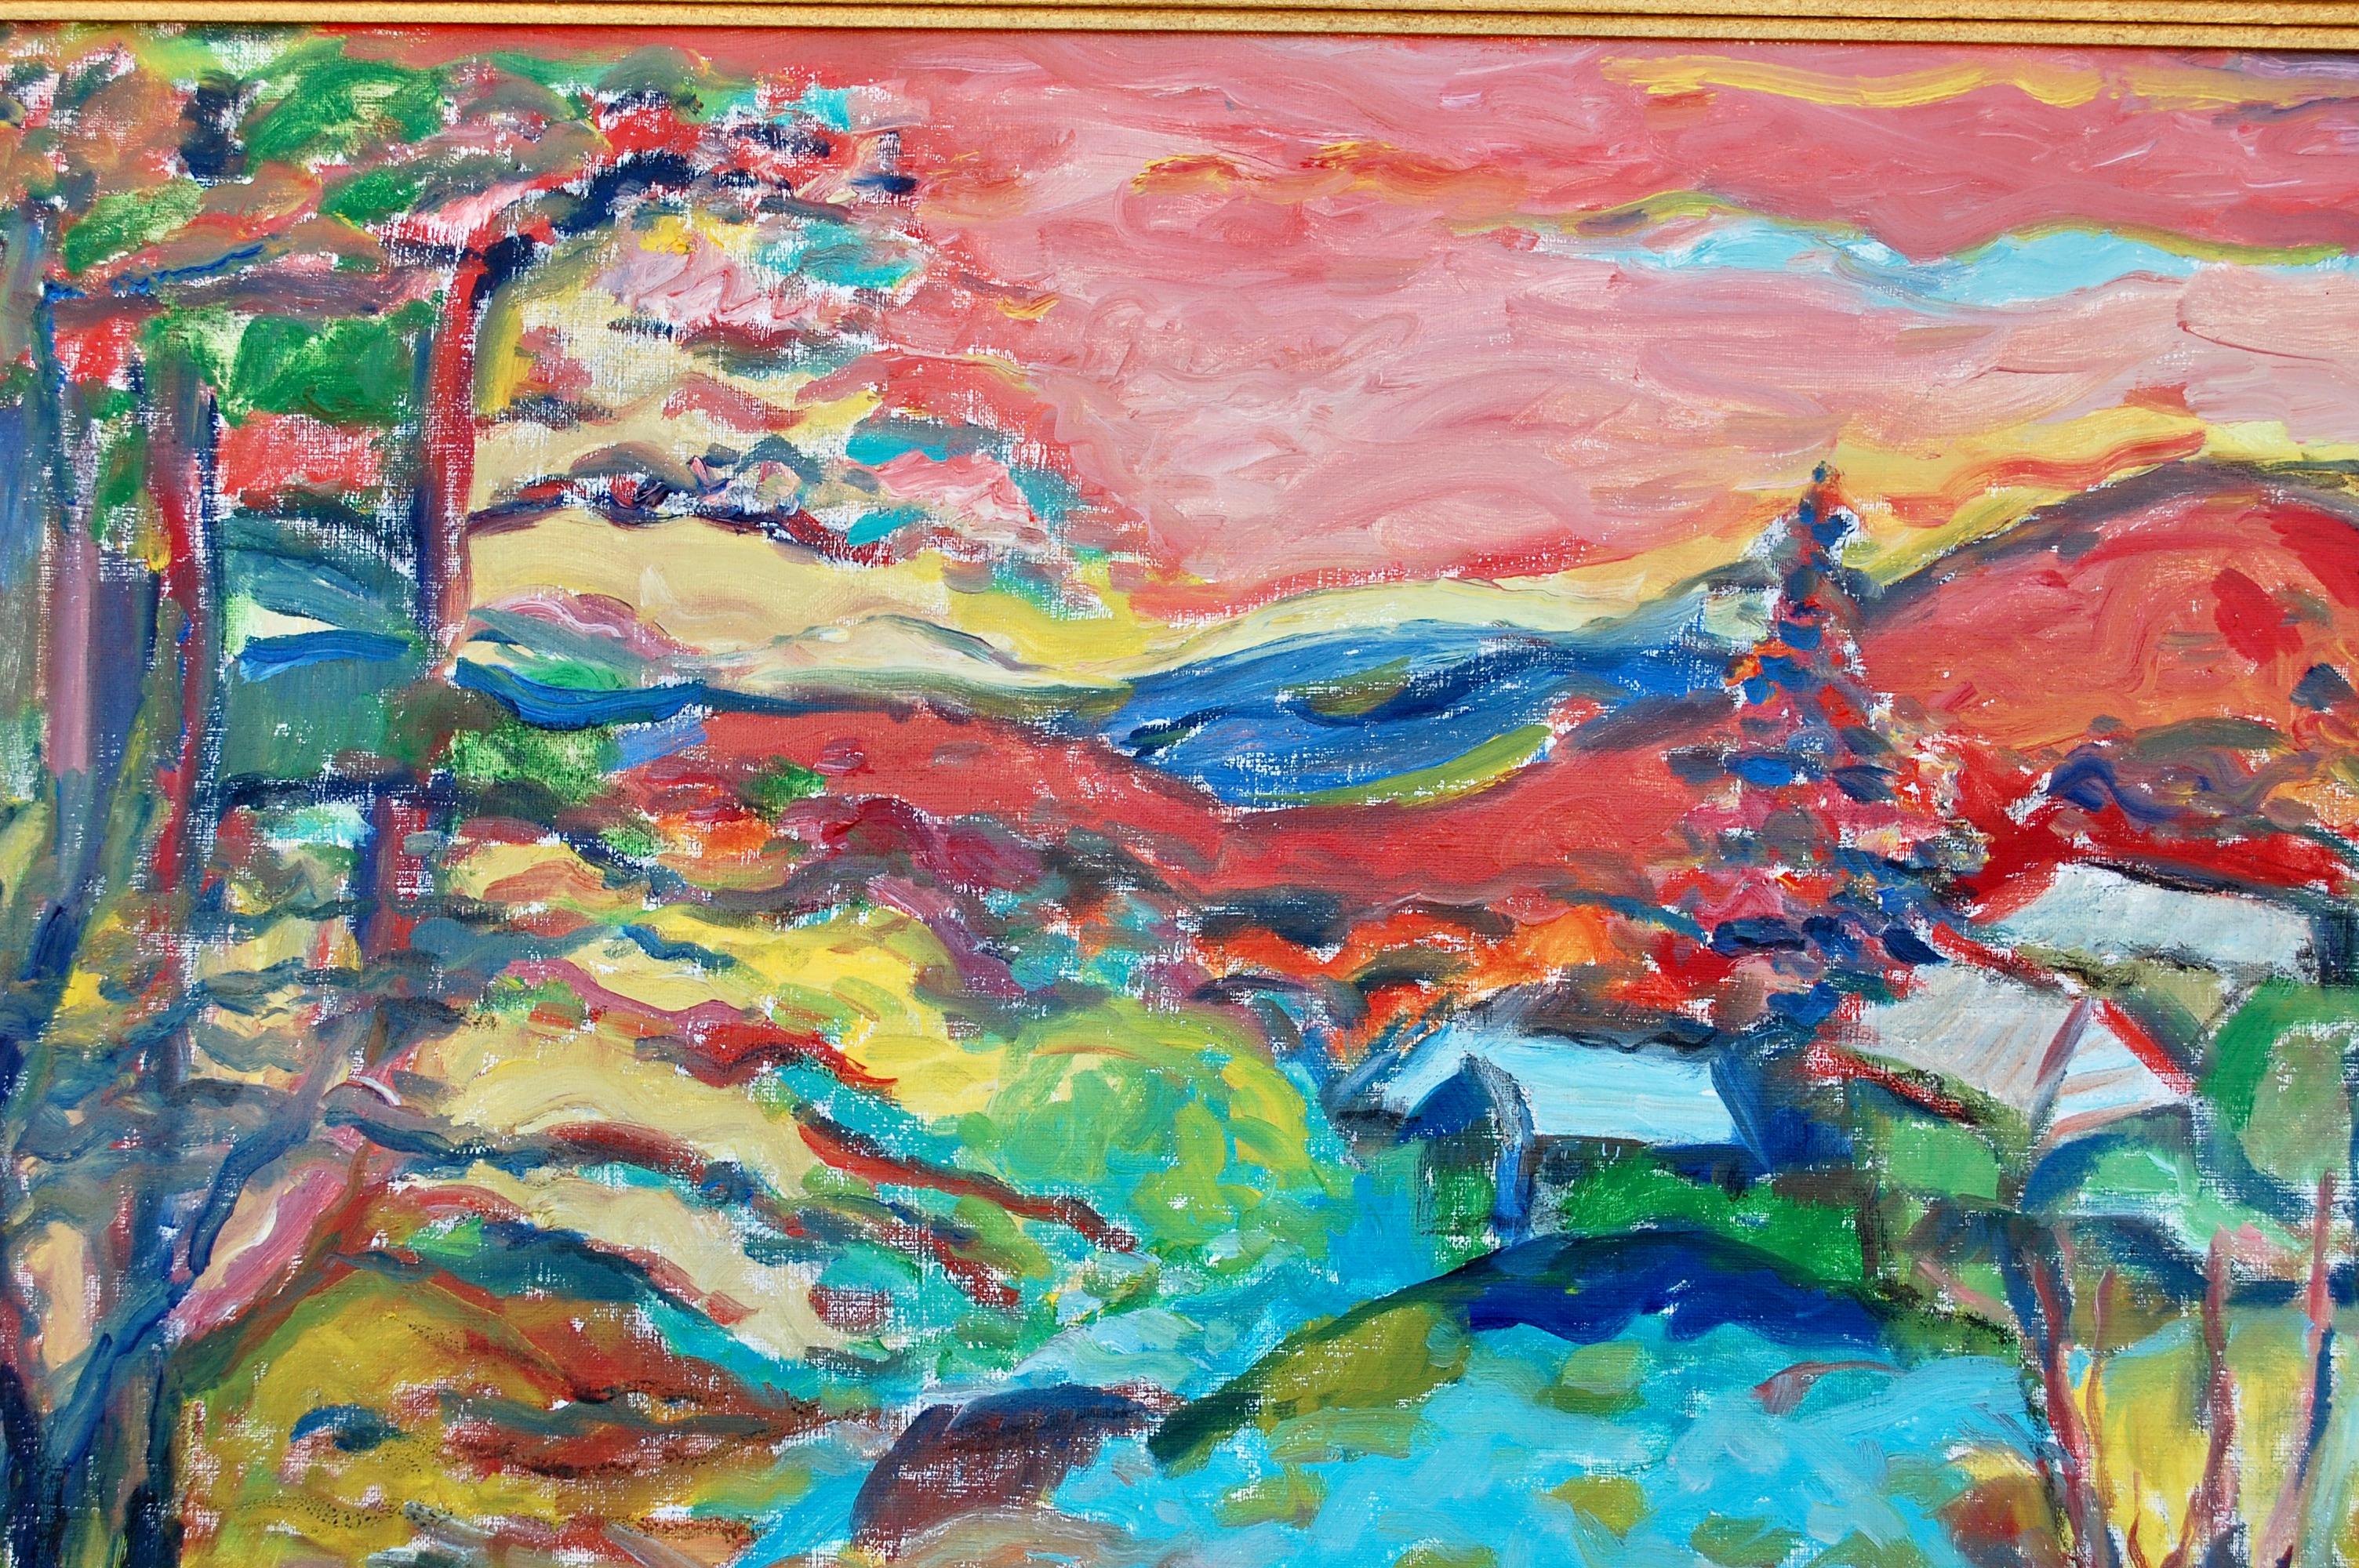  Paysage vibrant avec vue sur les montagnes
Taille : 24x30 encadré 30x36 x1
Judith Sobel est née à Lwow, en Pologne, en 1924. Après la Seconde Guerre mondiale, elle a fréquenté l'Académie des Beaux-Arts de Lodz, en Pologne. Elle y a étudié avec les